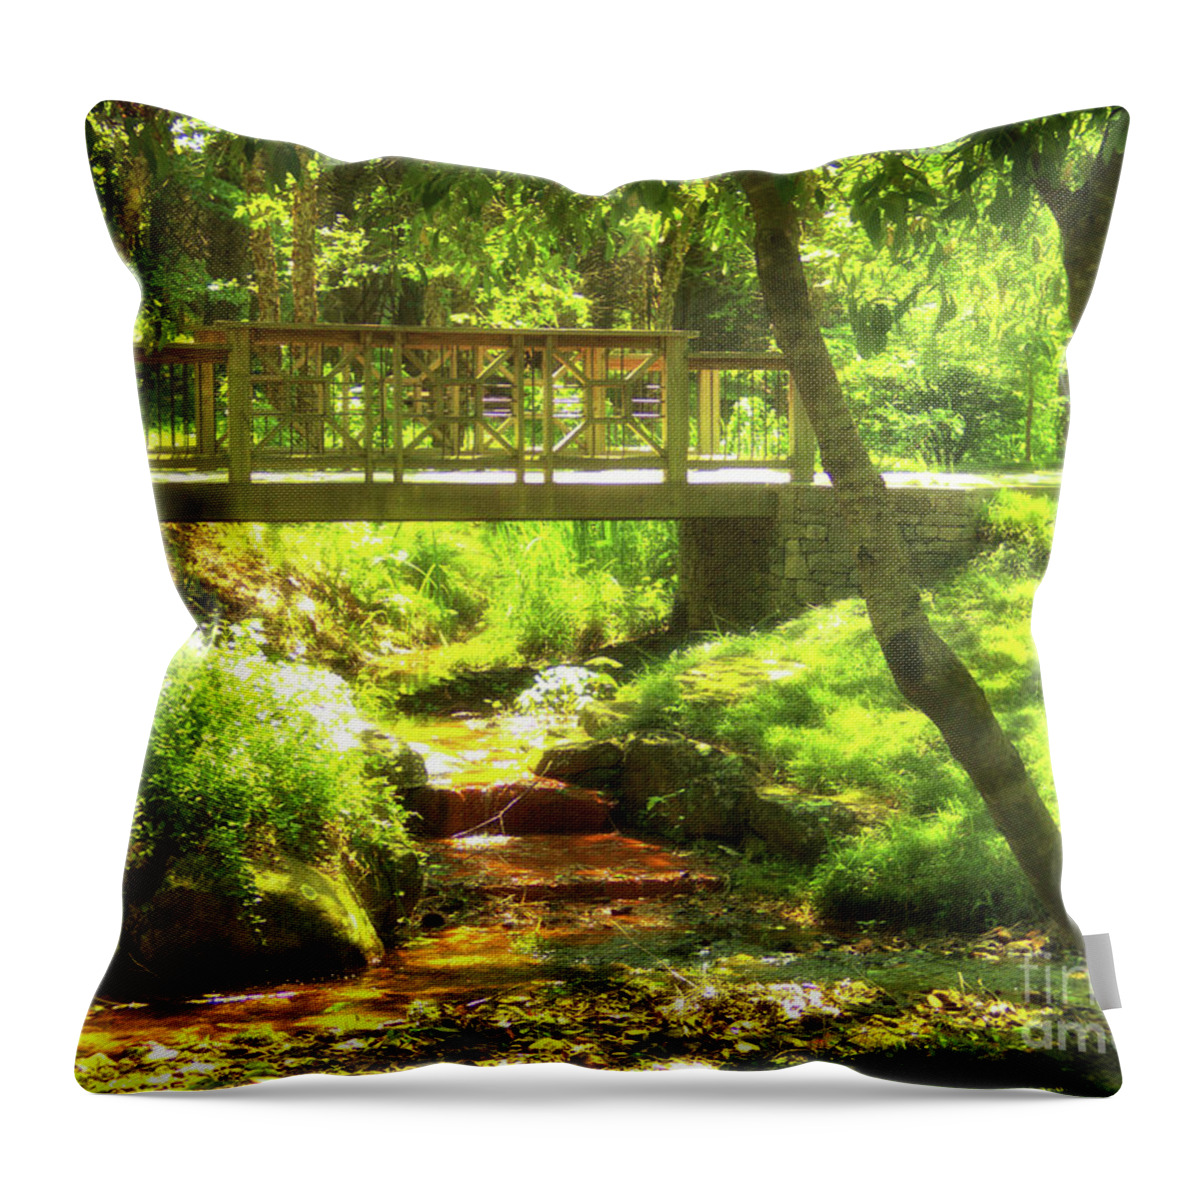 Gibbs Garden Throw Pillow featuring the photograph Secret Garden Bridge by Nicole Angell